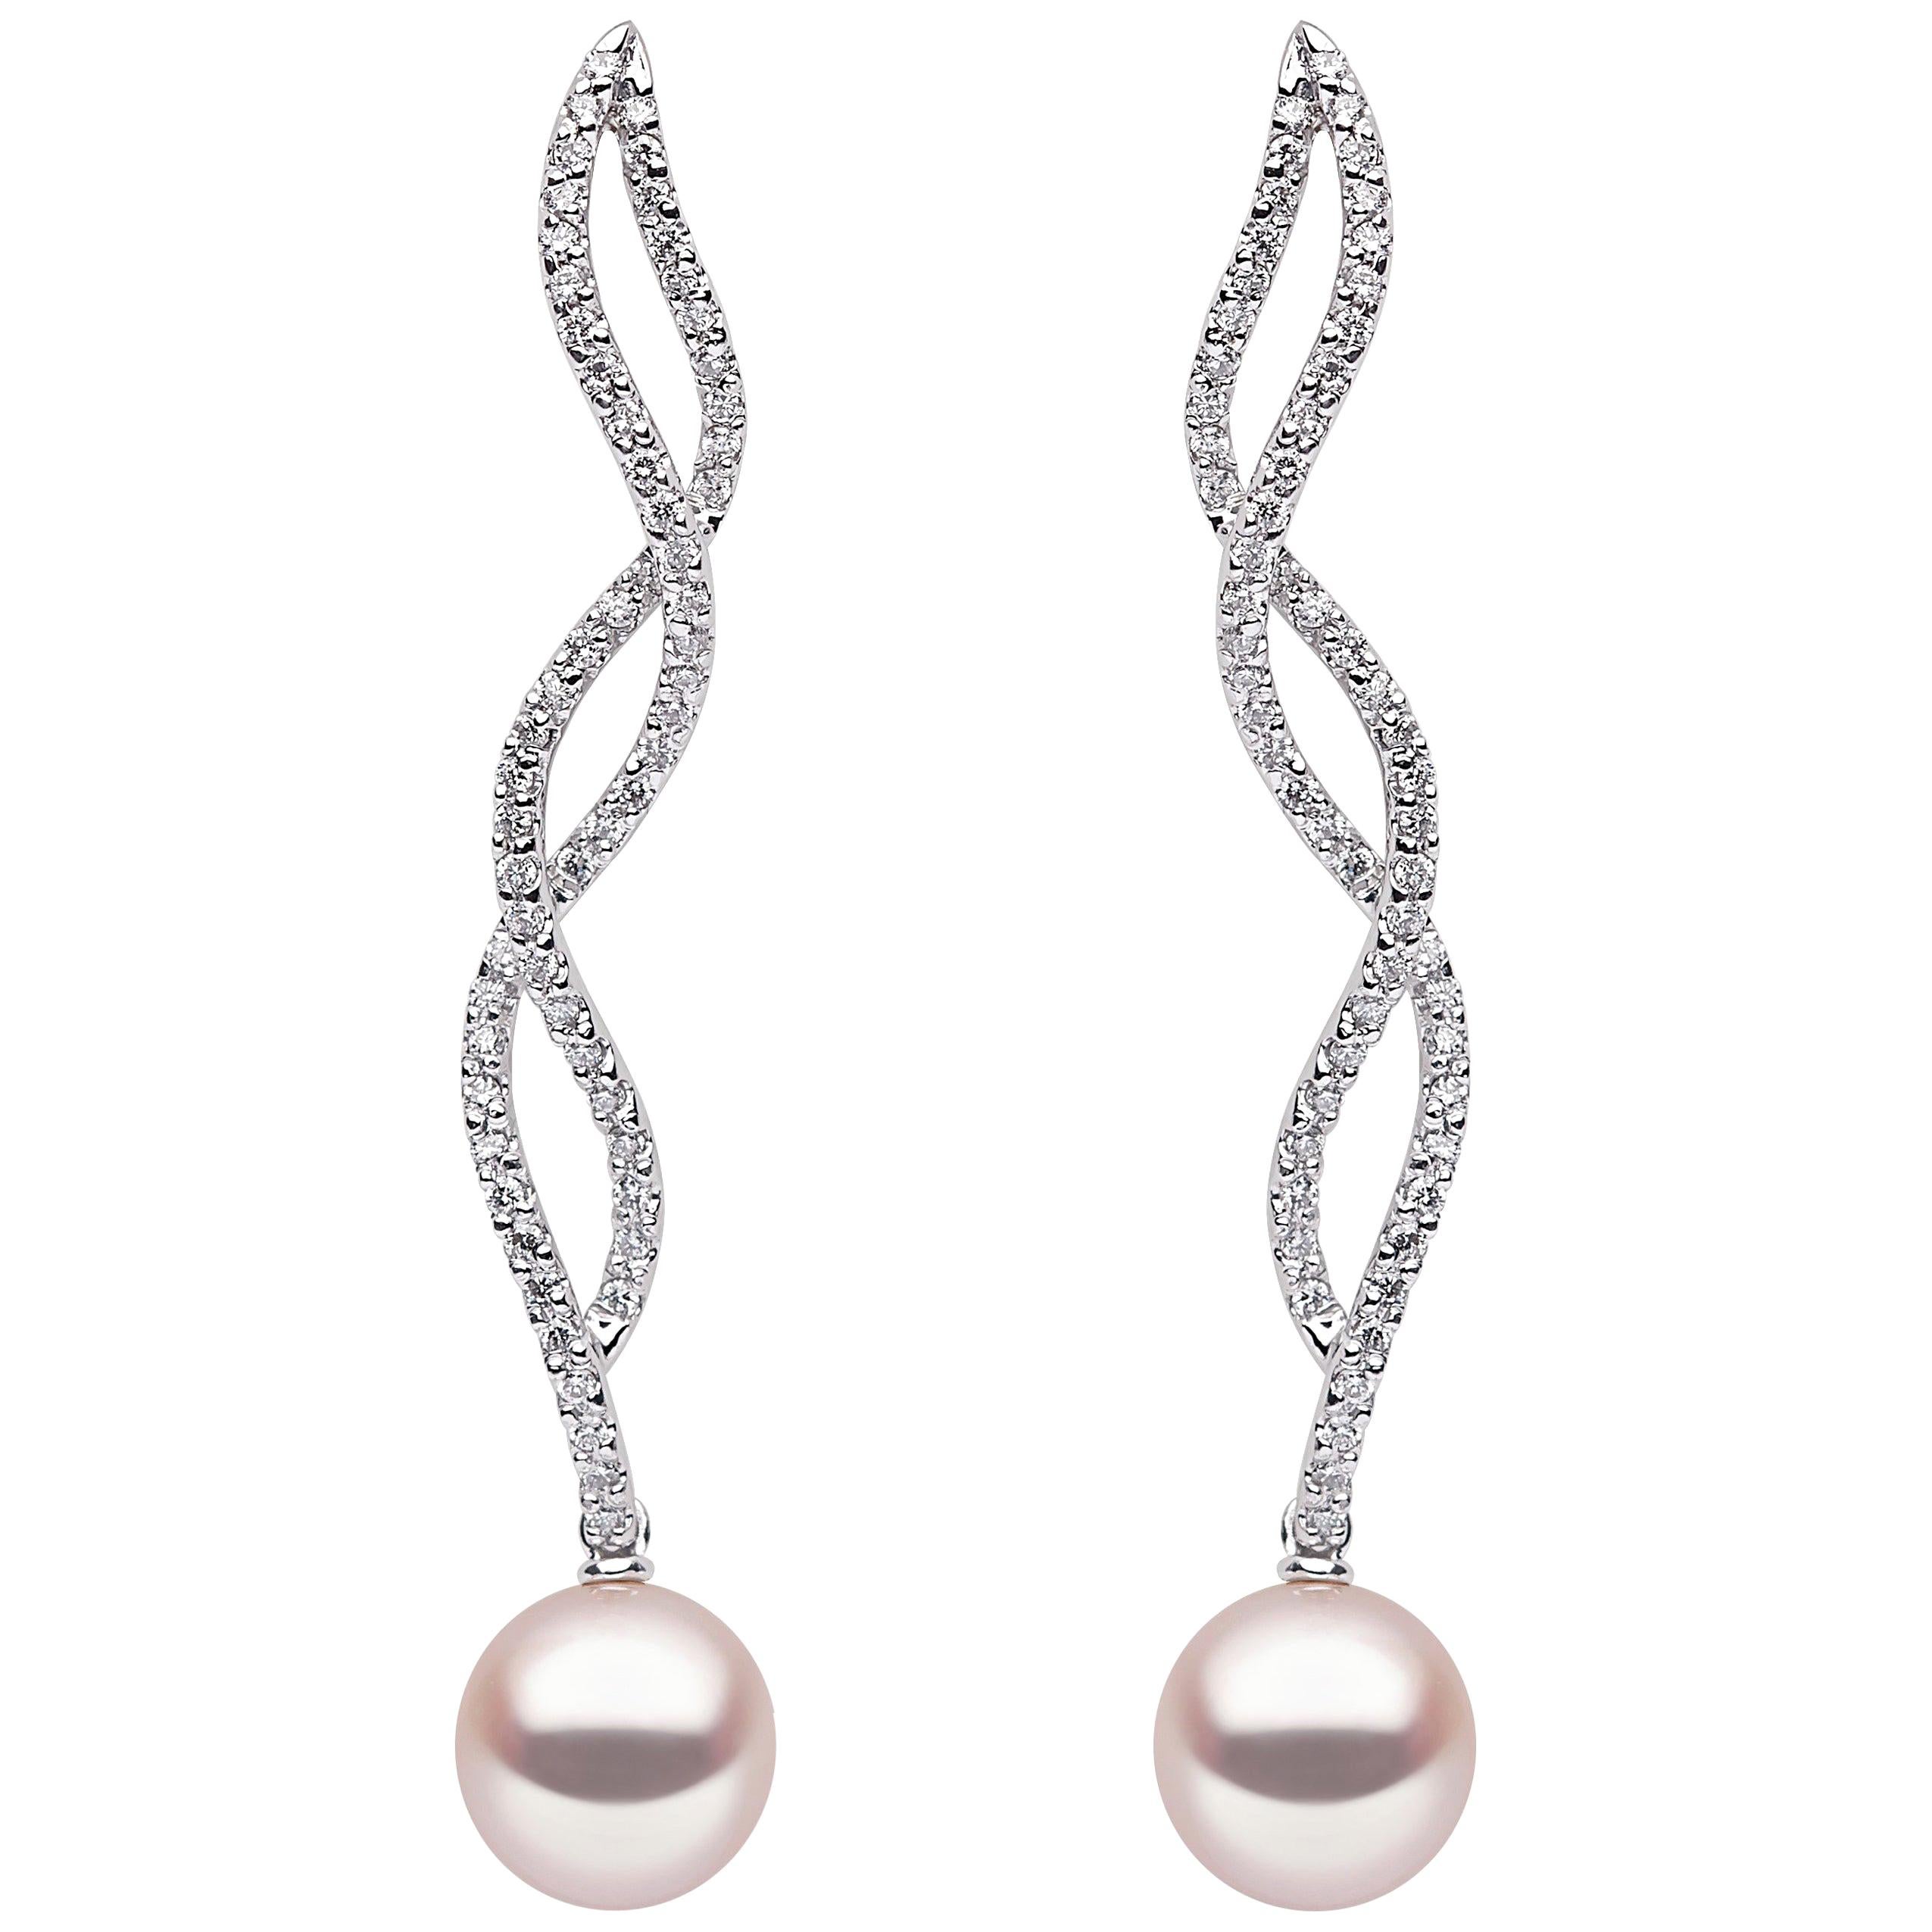 Yoko London, boucles d'oreilles en or blanc 18 carats, perles d'eau douce et diamants